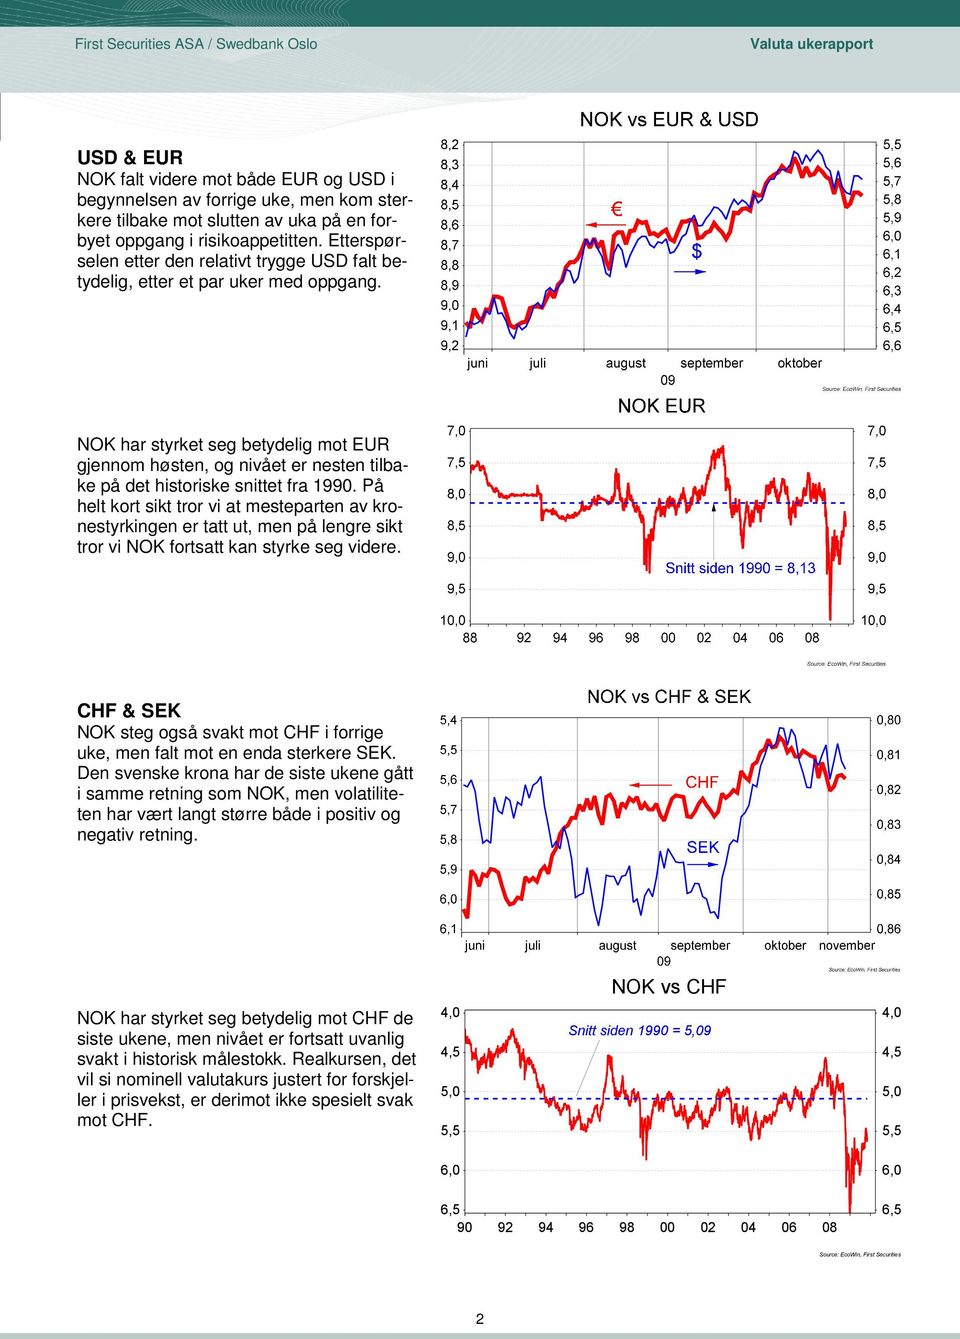 NOK har styrket seg betydelig mot EUR gjennom høsten, og nivået er nesten tilbake på det historiske snittet fra 1990.